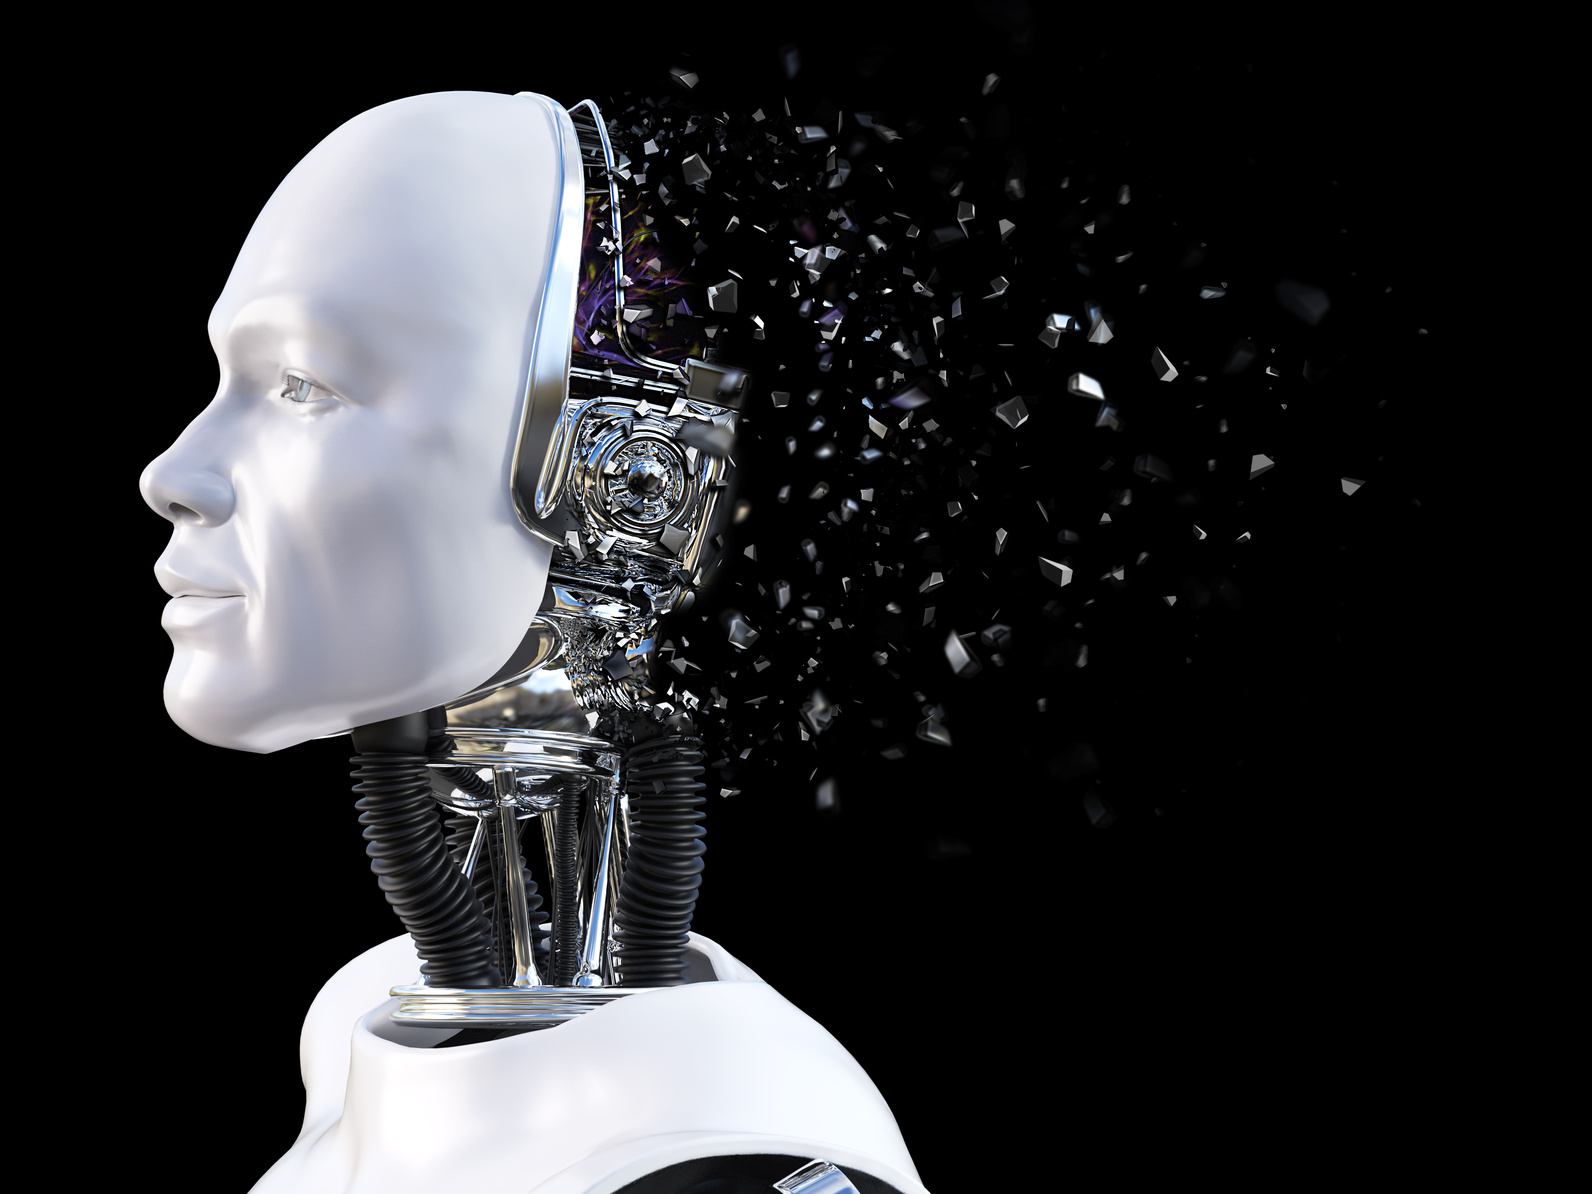 Inteligencja robotyczna (RQ) - buzzword czy rzeczywista potrzeba